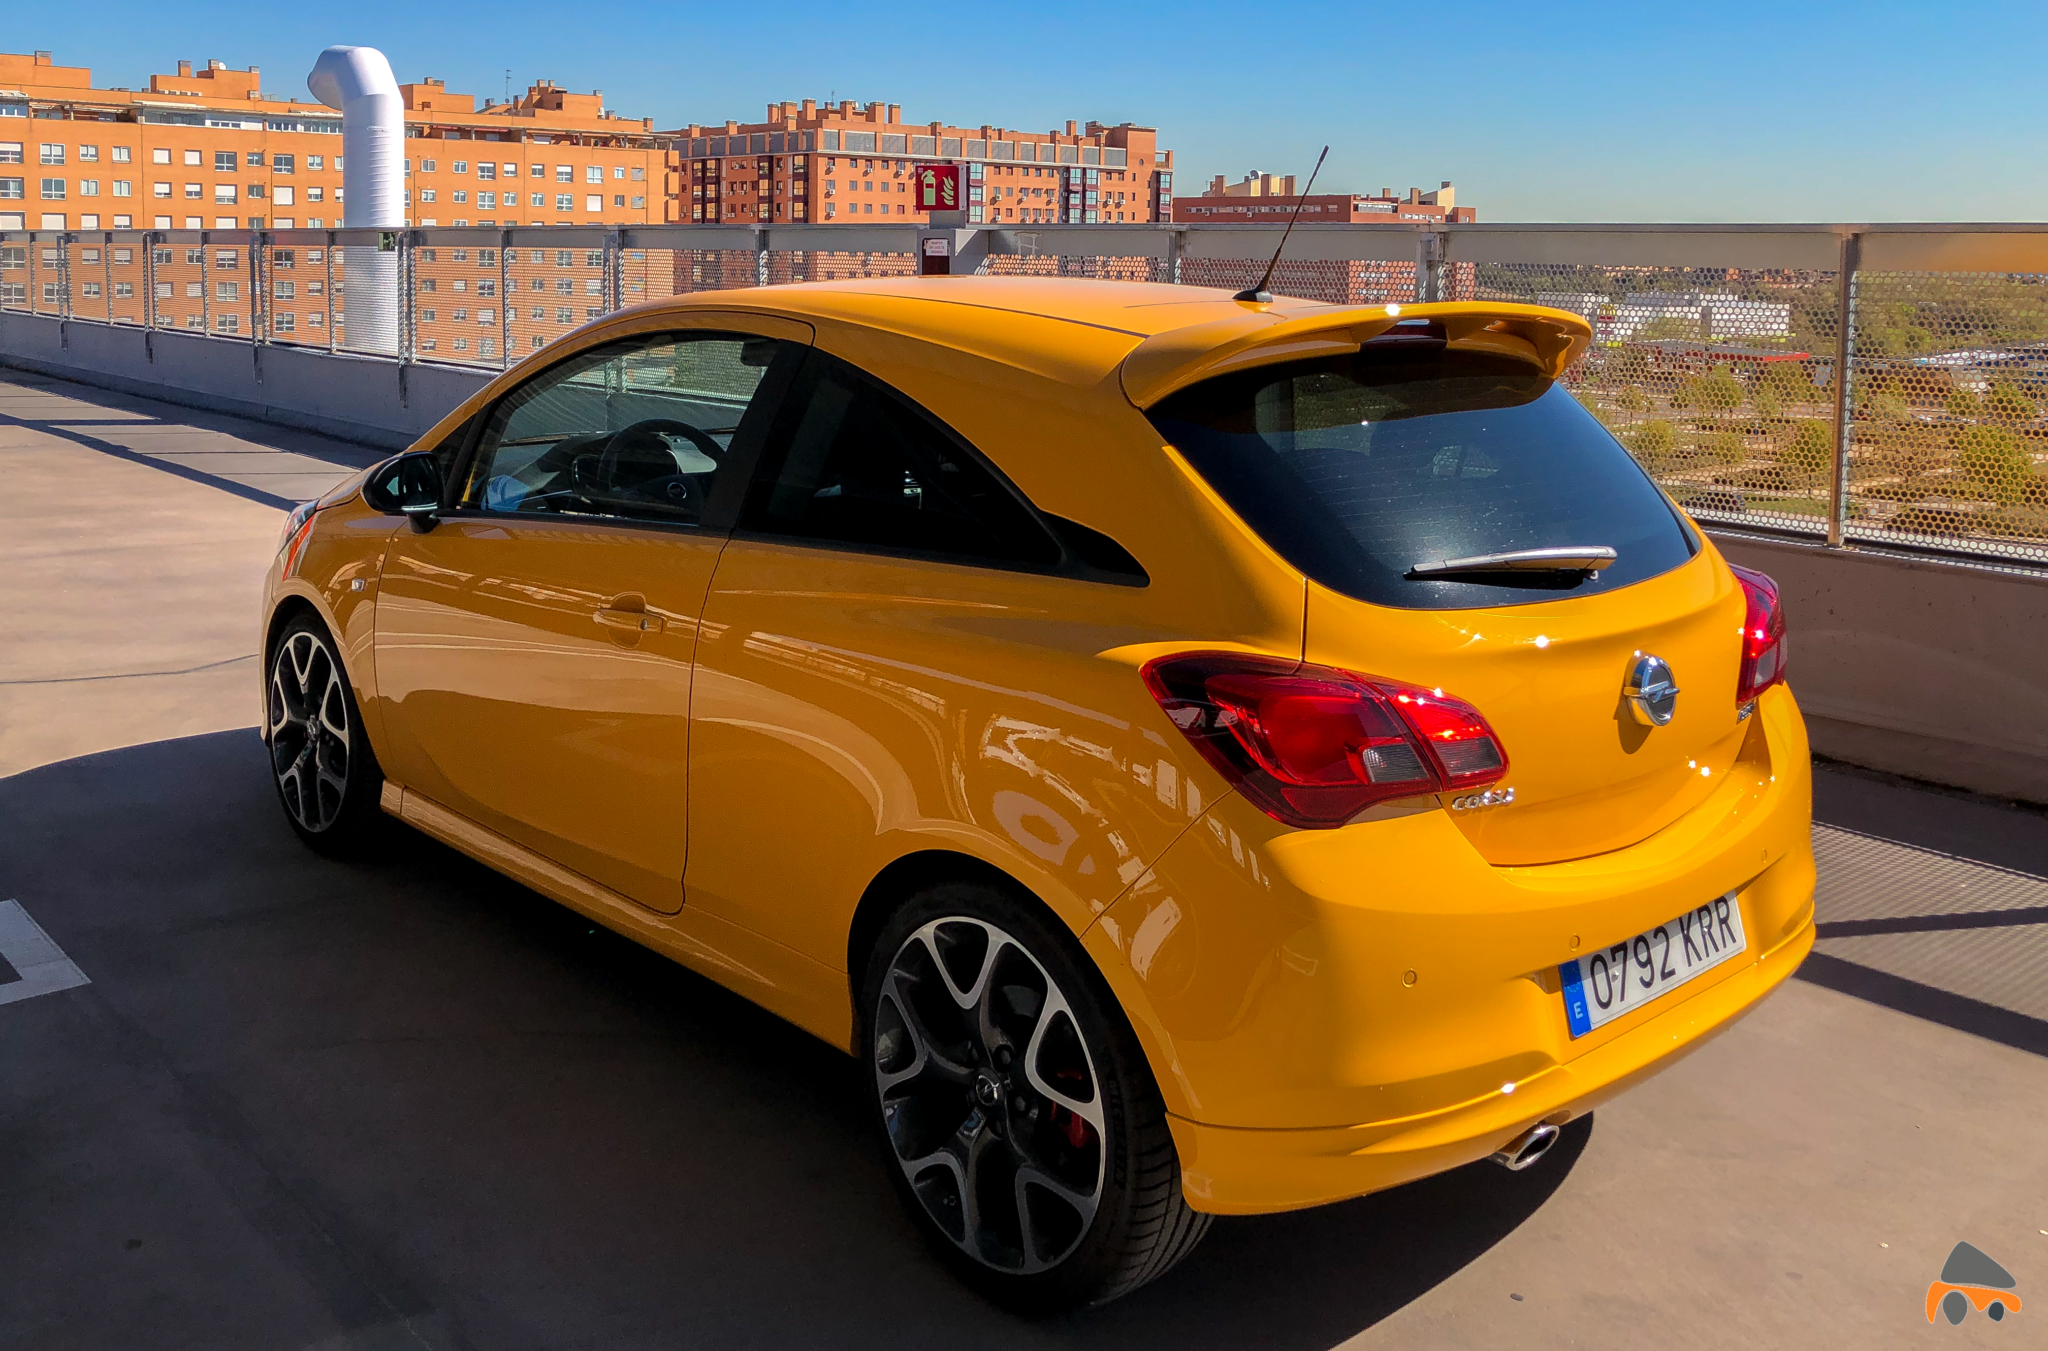 Trasera izquierda Opel Corsa GSI - Opel Corsa GSi: un juguete para pasarlo bien